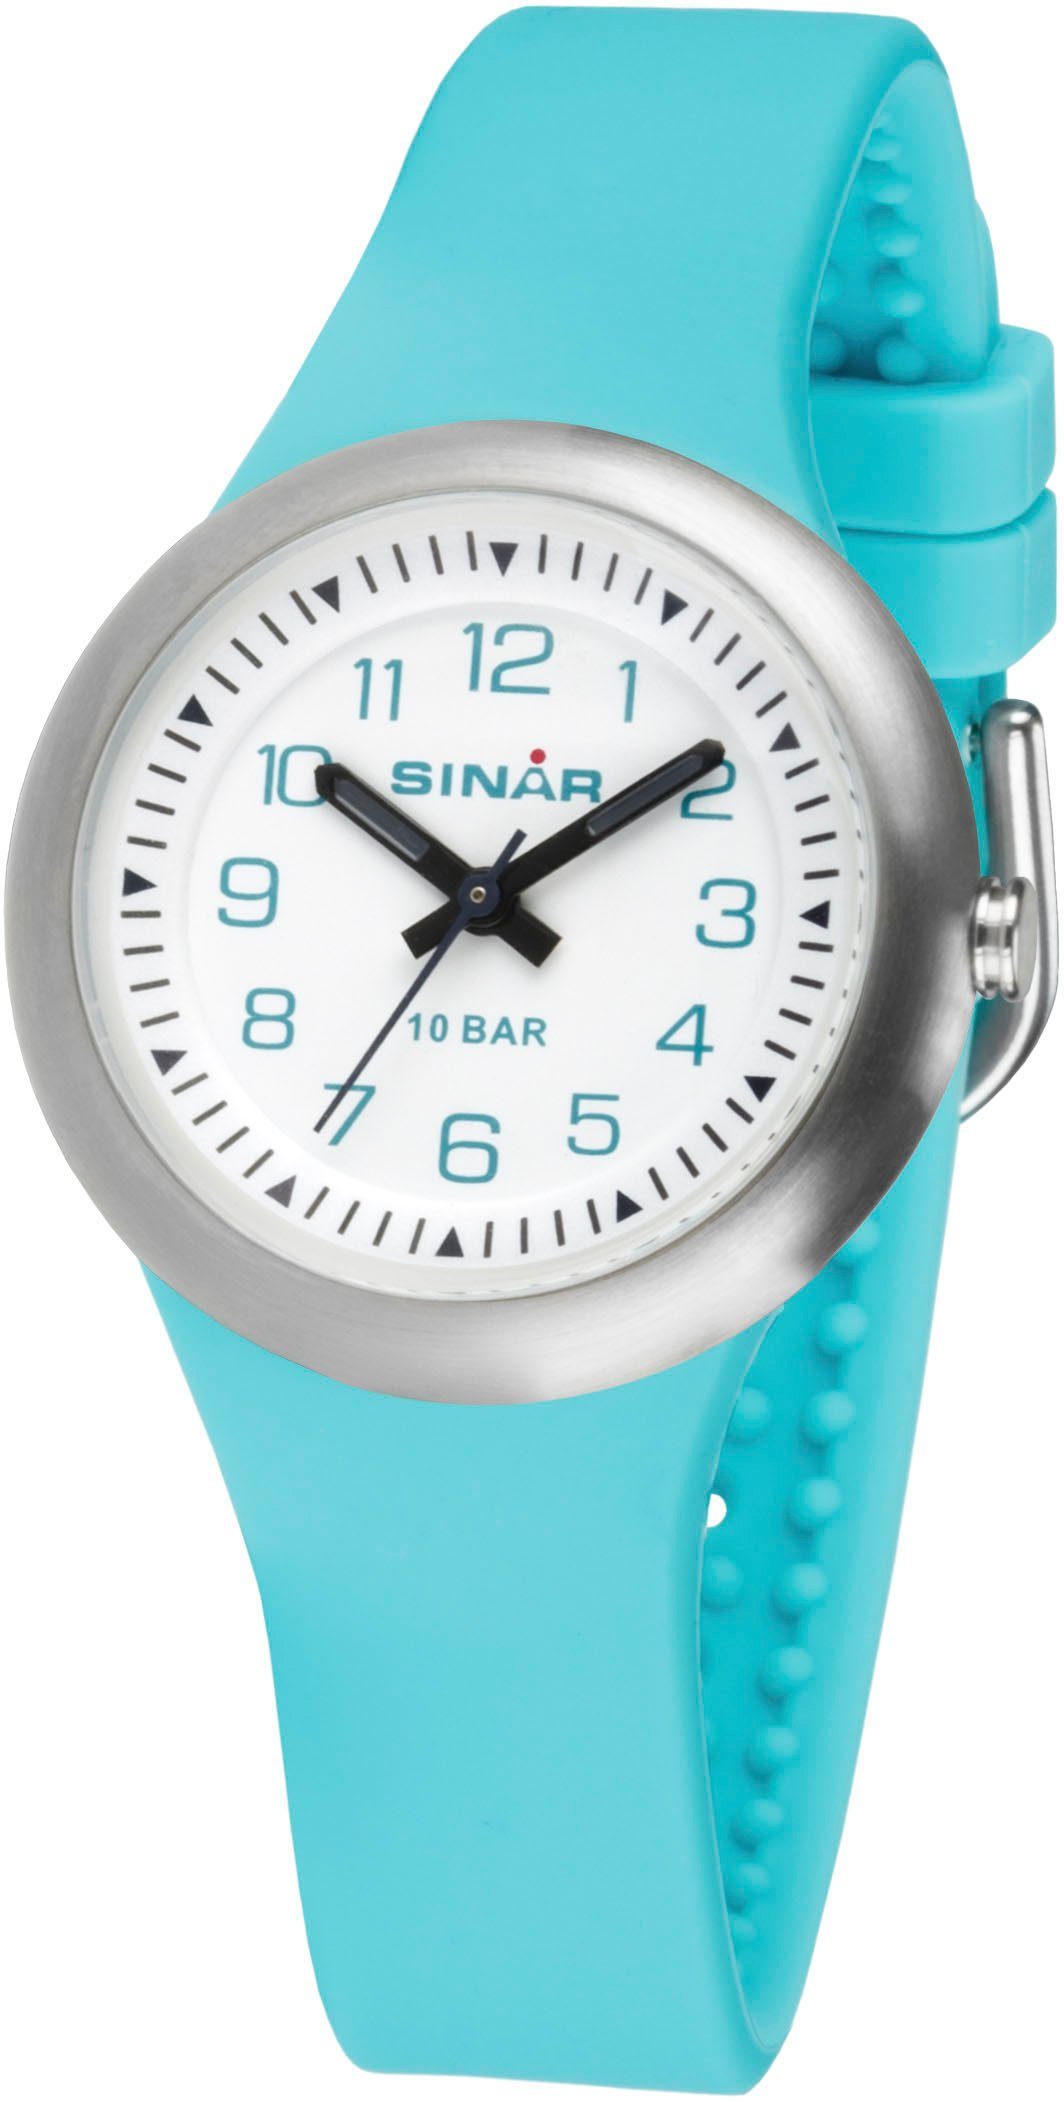 SINAR Quarzuhr XB-36-3, Armbanduhr, Kinderuhr, Mädchenuhr, ideal auch als Geschenk